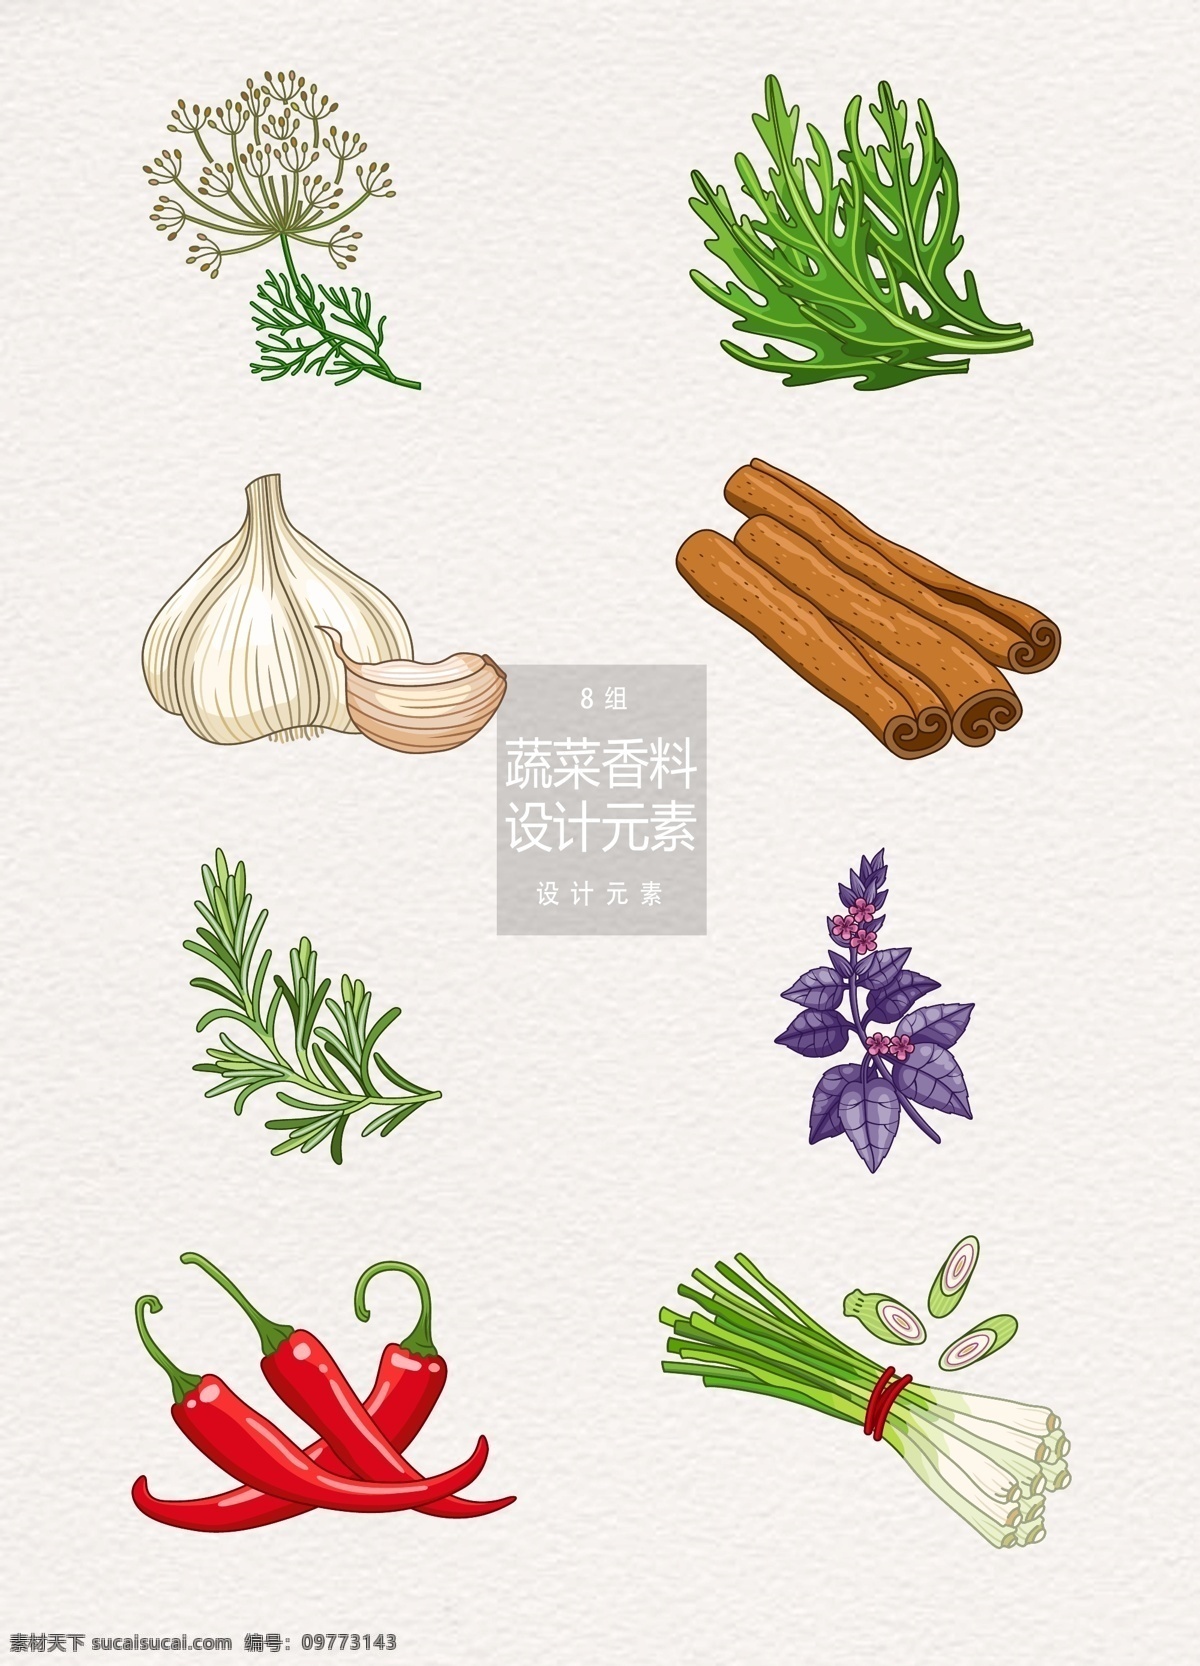 手绘 蔬菜 香料 元素 设计元素 辣椒 葱 手绘蔬菜 蒜头 香草 紫苏